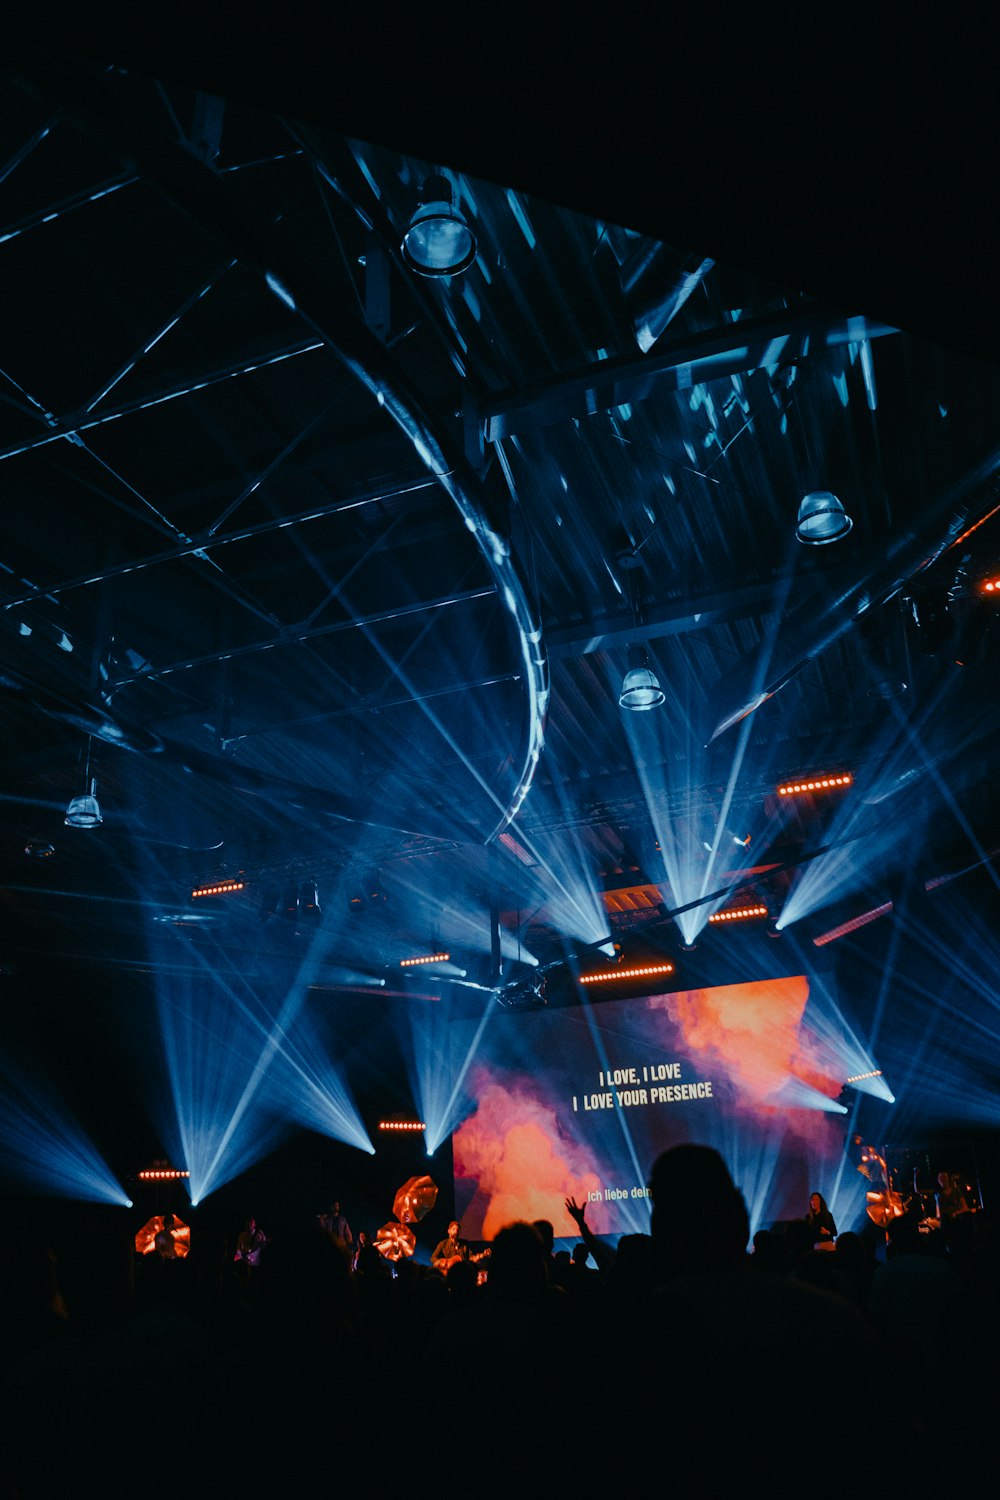 schermo del proiettore che visualizza il testo sul palco con le luci